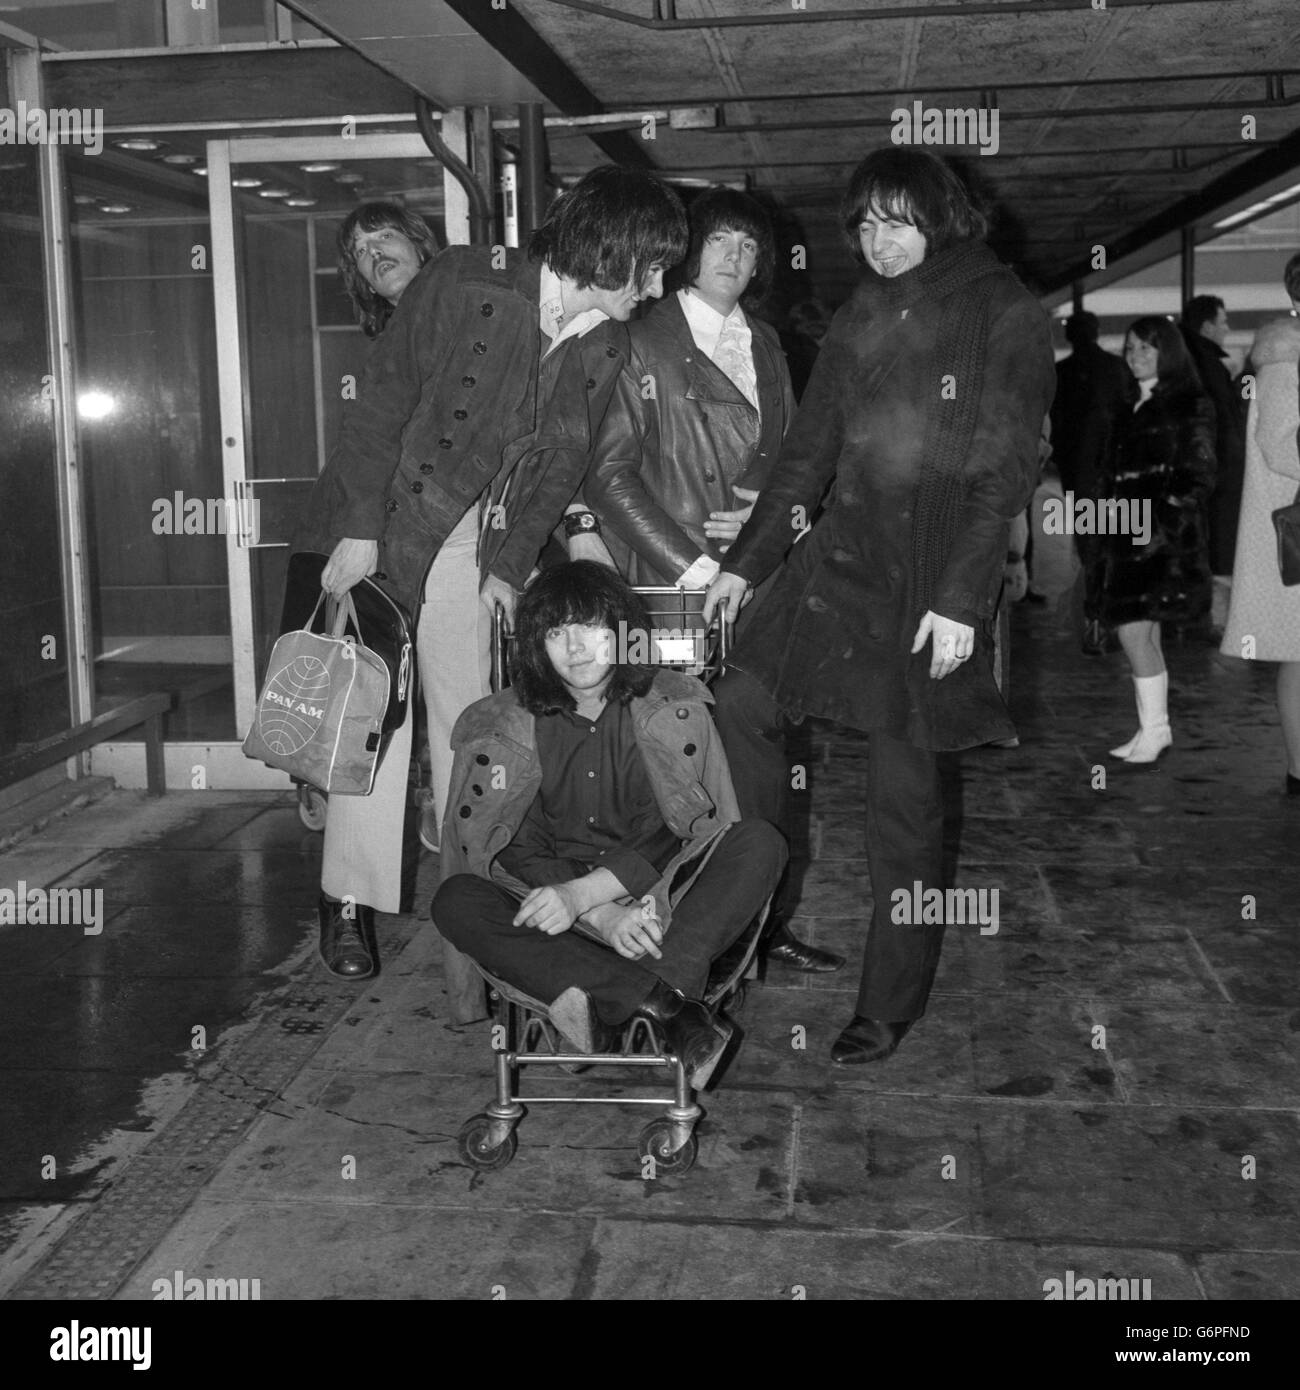 (Von l-r) Rod Evans, Jon Lord, Nicky Simper und Ritchie Blackmore, Mitglieder der englischen Rockgruppe Deep Purple, fahren gemeinsam mit dem Gepäckwagen nach Ian Paice am Flughafen London Heathrow. 3/1/1969 Stockfoto